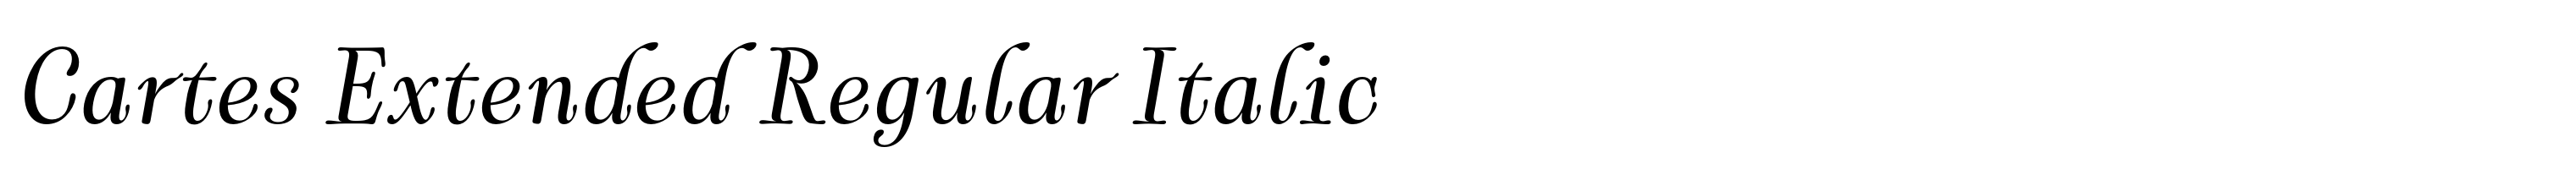 Cartes Extended Regular Italic